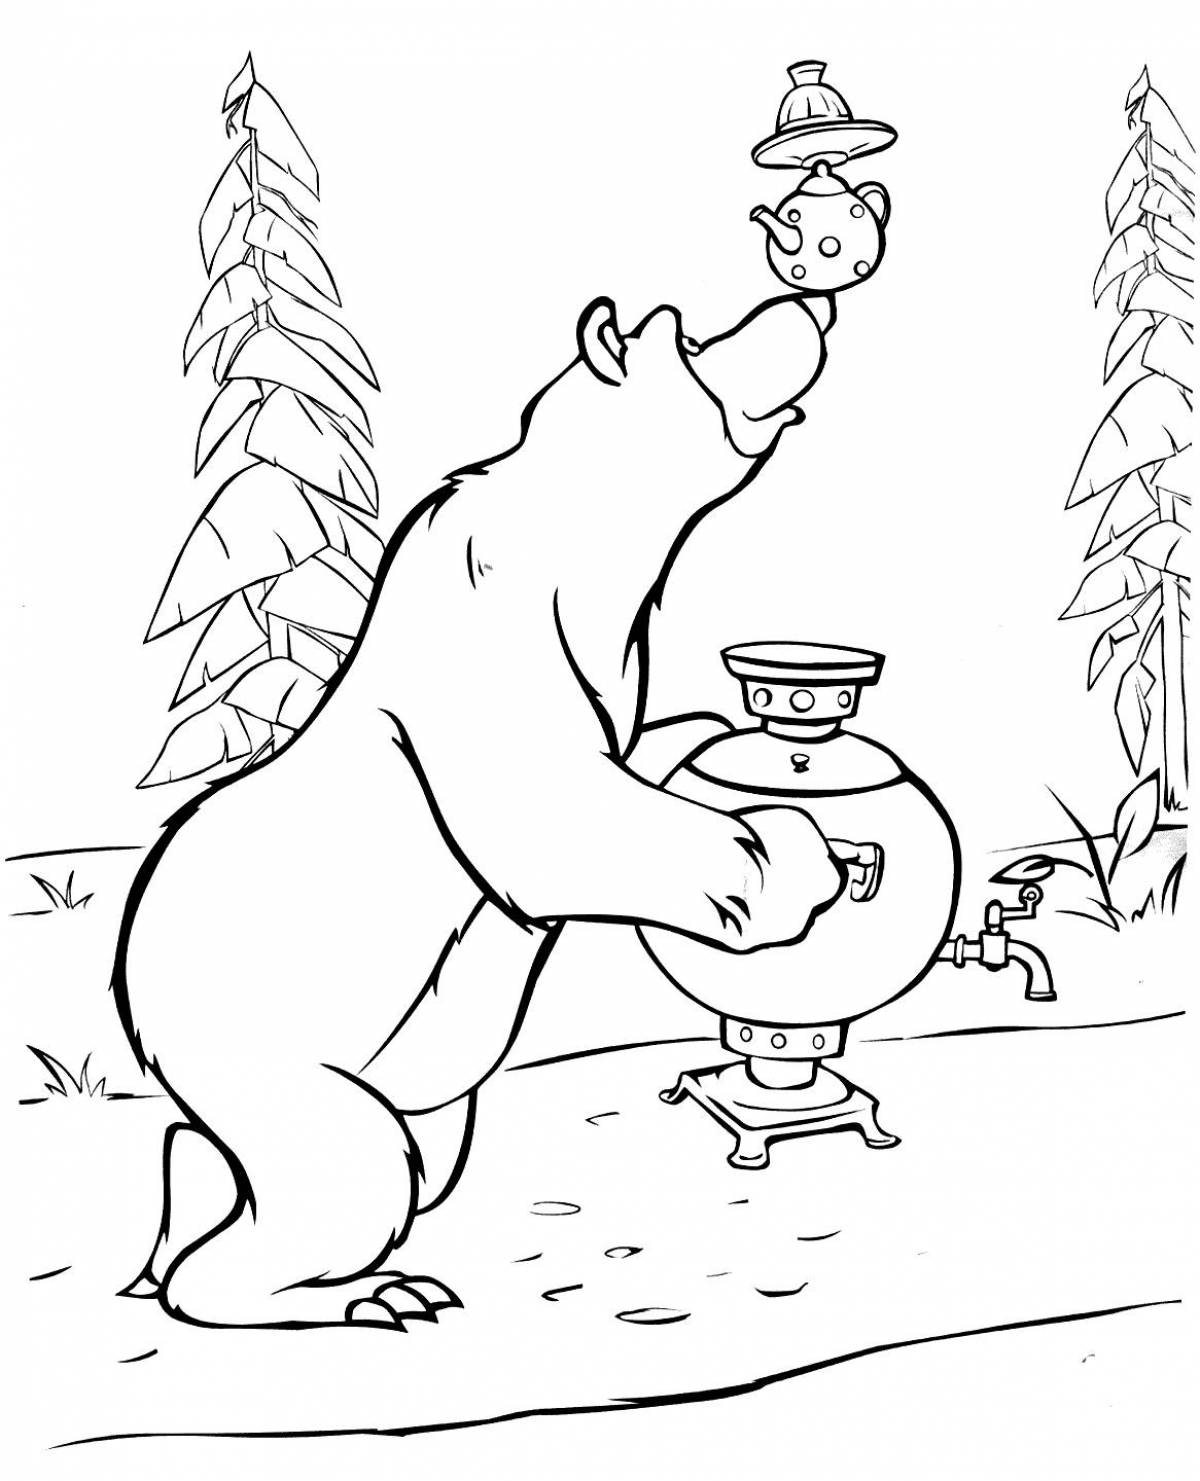 Bear carries a samovar